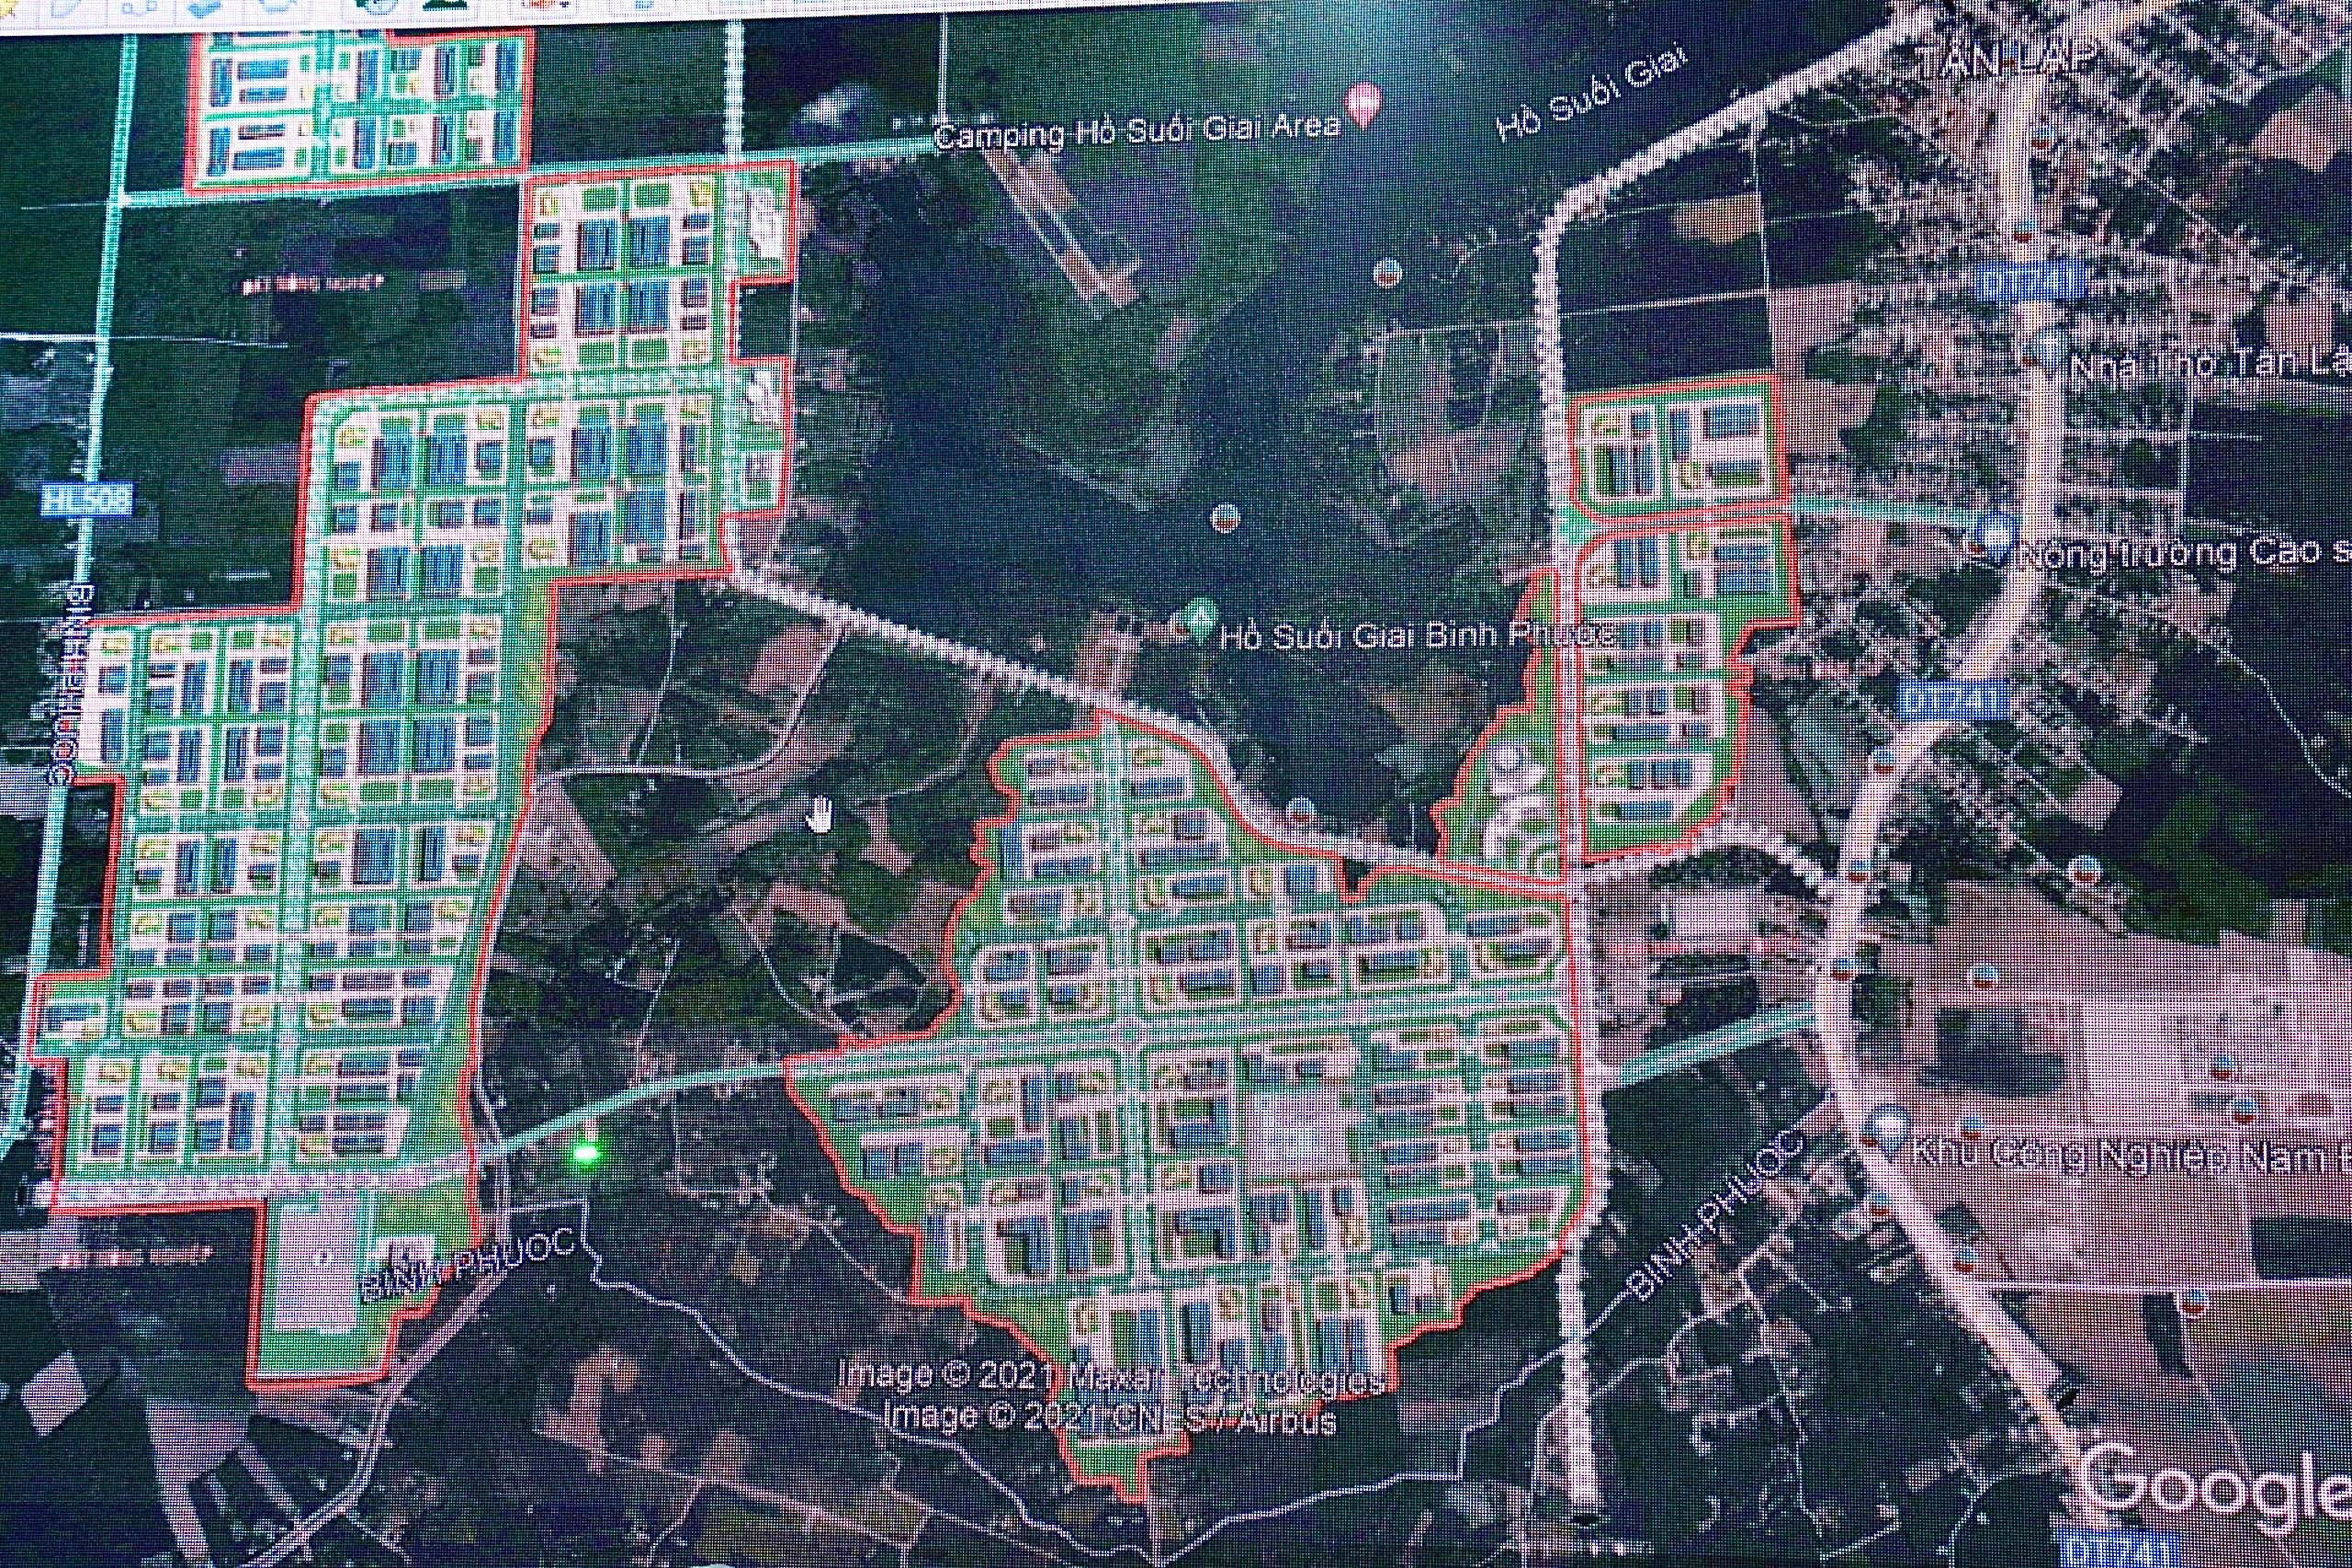 Bản đồ quy hoạch Khu công nghiệp Bắc và Nam Đồng Phú là công cụ hữu ích giúp cho việc phát triển kinh tế của tỉnh Bình Phước. Với các dự án mới và sự đầu tư vào cơ sở hạ tầng, khu công nghiệp Bắc và Nam Đồng Phú sẽ tạo cơ hội việc làm và thu hút sự quan tâm từ các doanh nghiệp trong và ngoài nước.